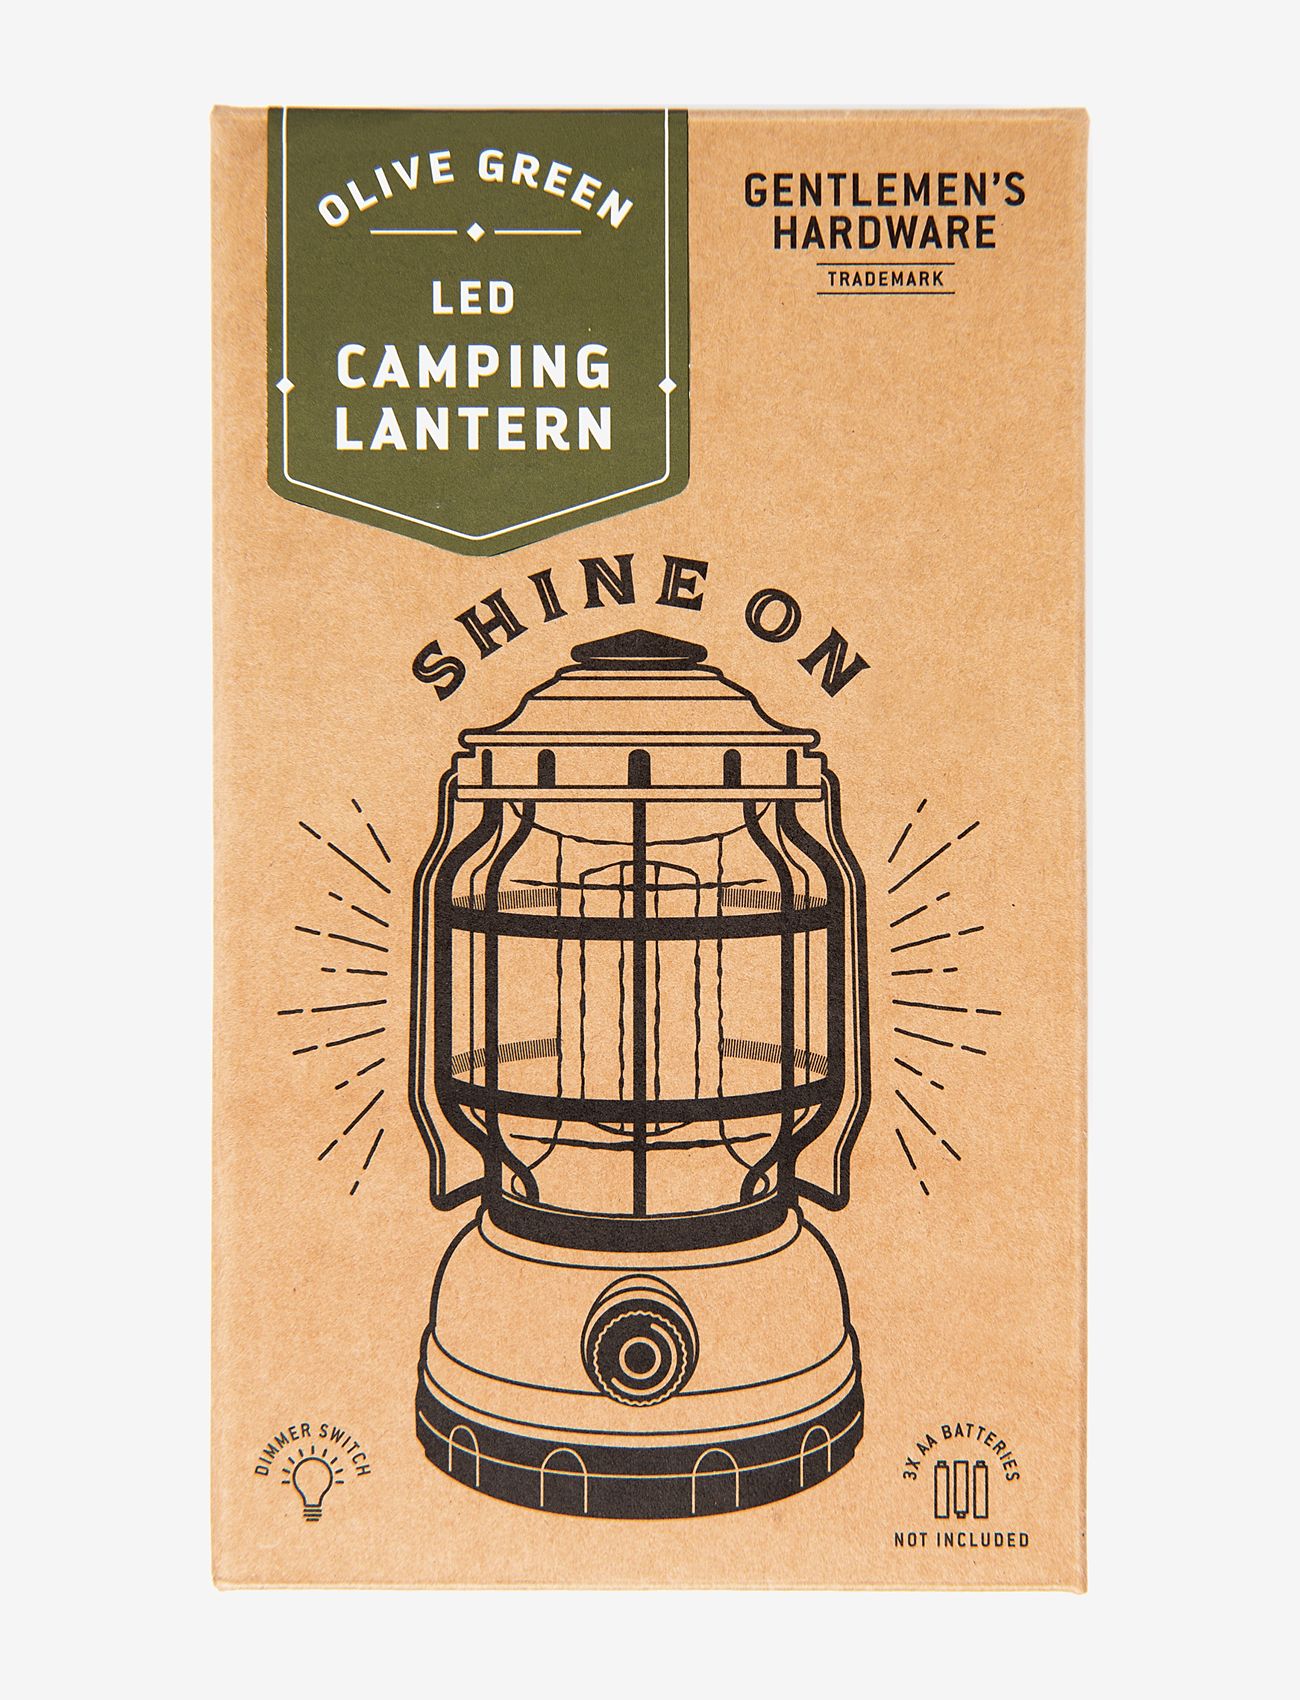 Gentlemen's Hardware - Camping Lantern - lowest prices - green - 1